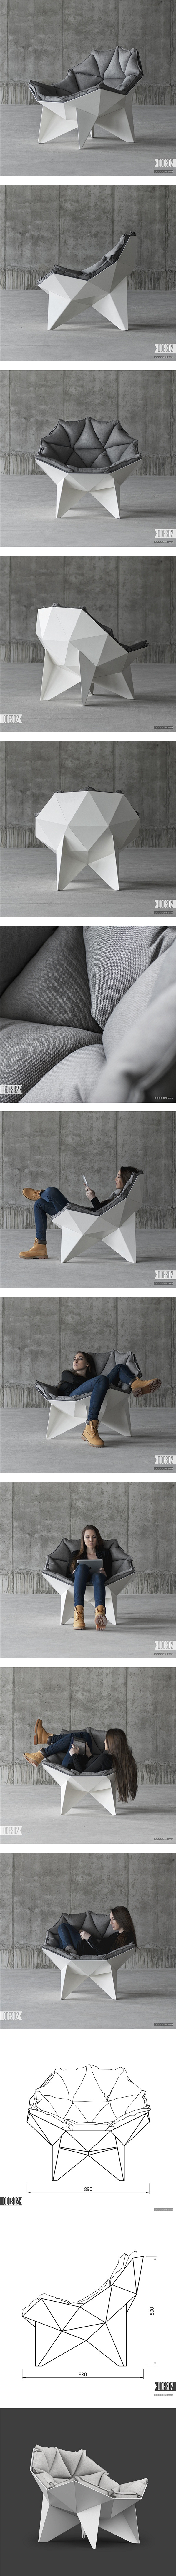 球形薄壳结构休闲椅 | 视觉中国